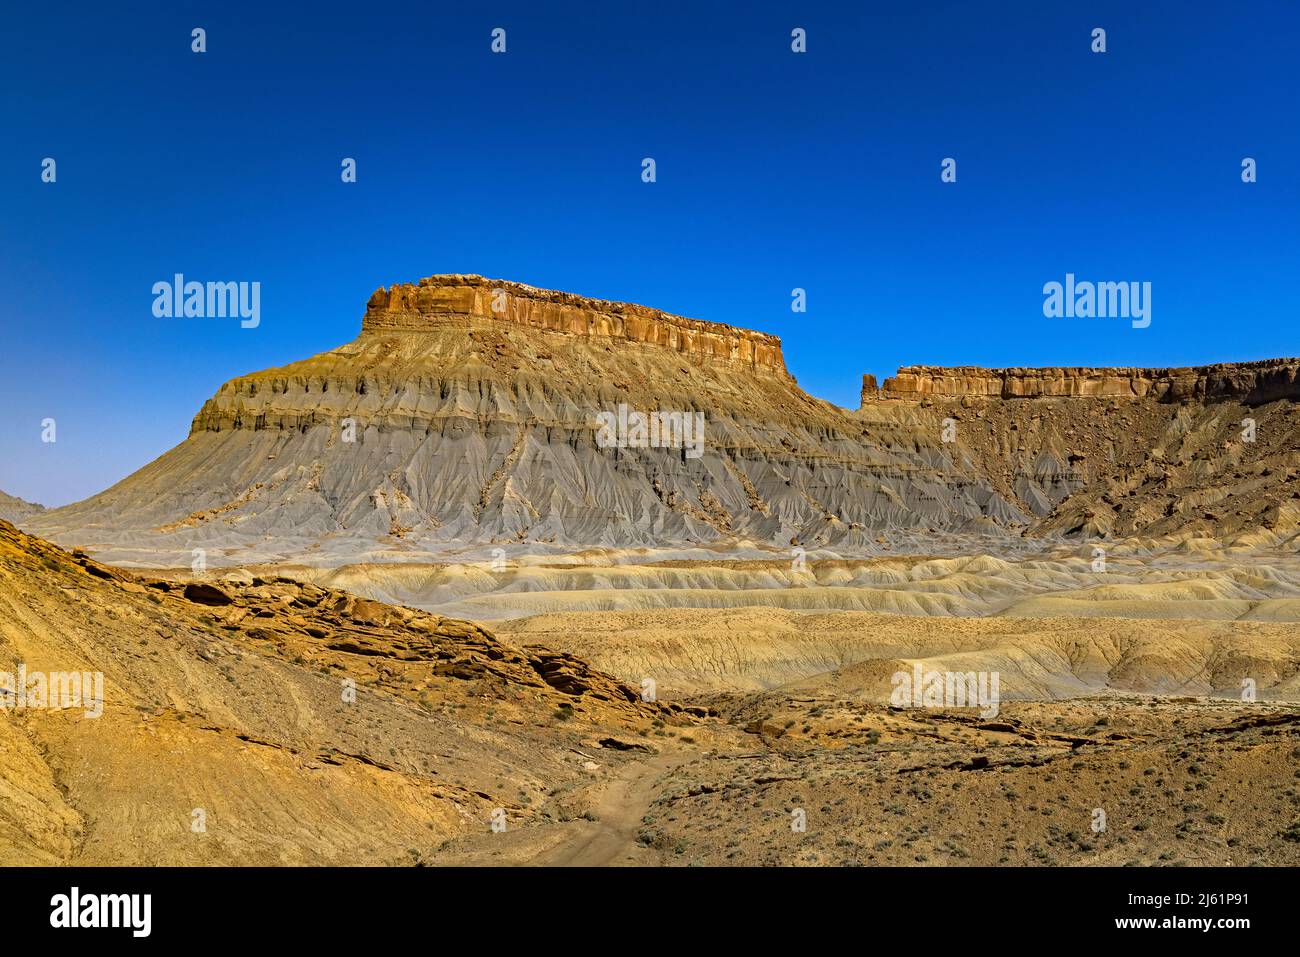 Die atemberaubende Formation, bekannt als North Caineville Mesa. Diese Ansicht zeigt südöstlich von der West Factory Road im BLM-Land nördlich von Caineville, UT, USA. Stockfoto